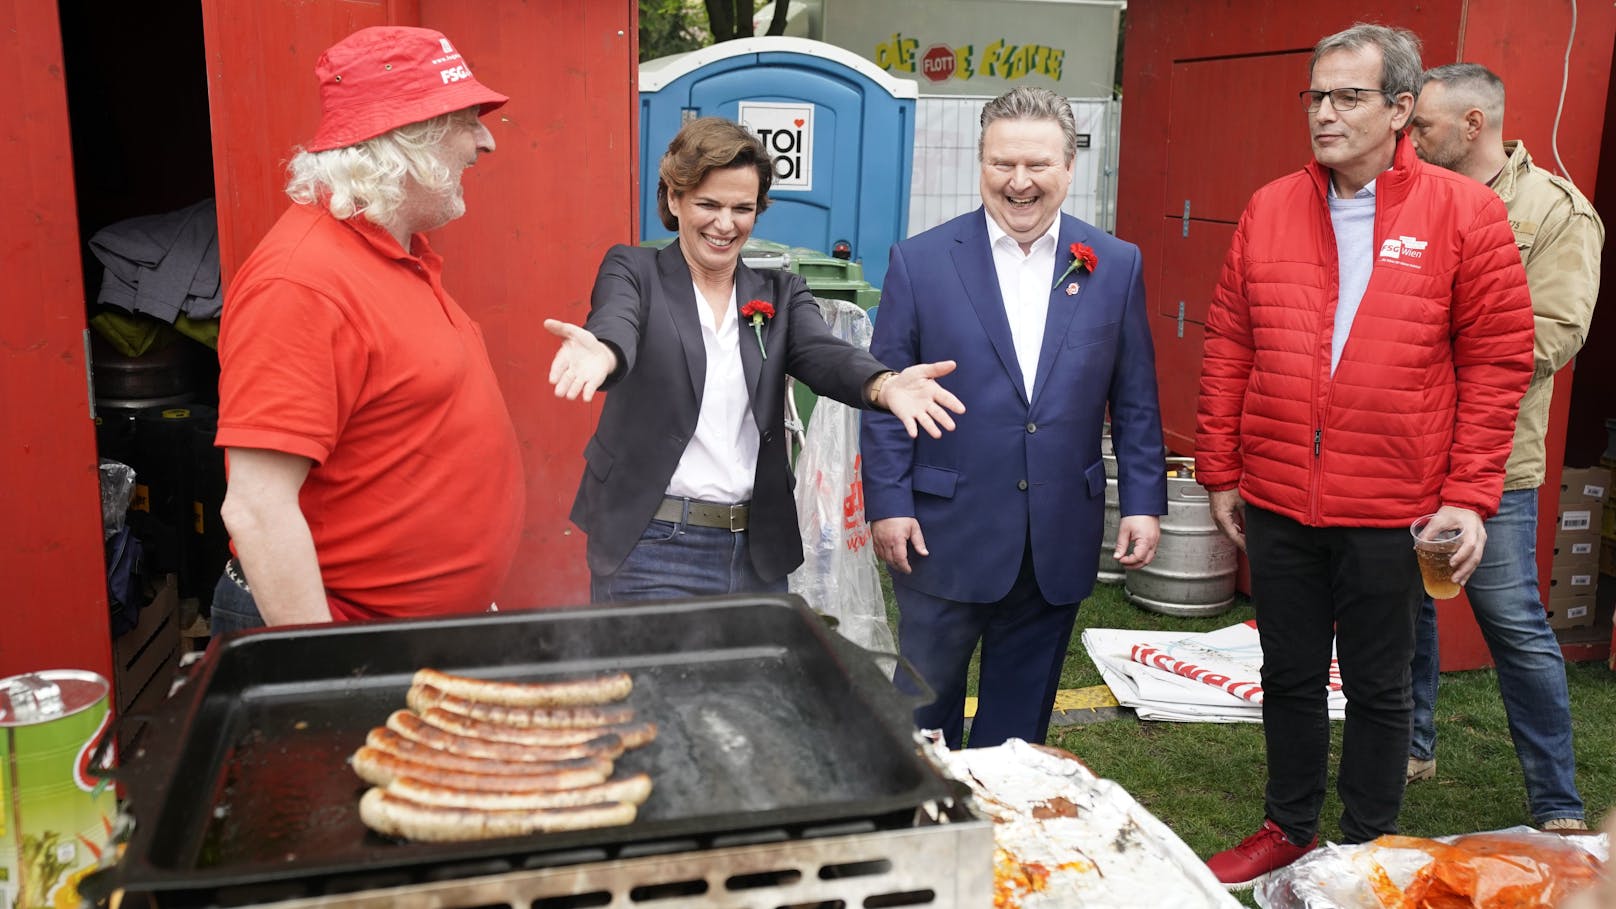 SPÖ-Chefin Pamela Rendi-Wagner und Wiens Bürgermeister Michael Häupl beim 1. Maifest auf der Kaiserwiese.